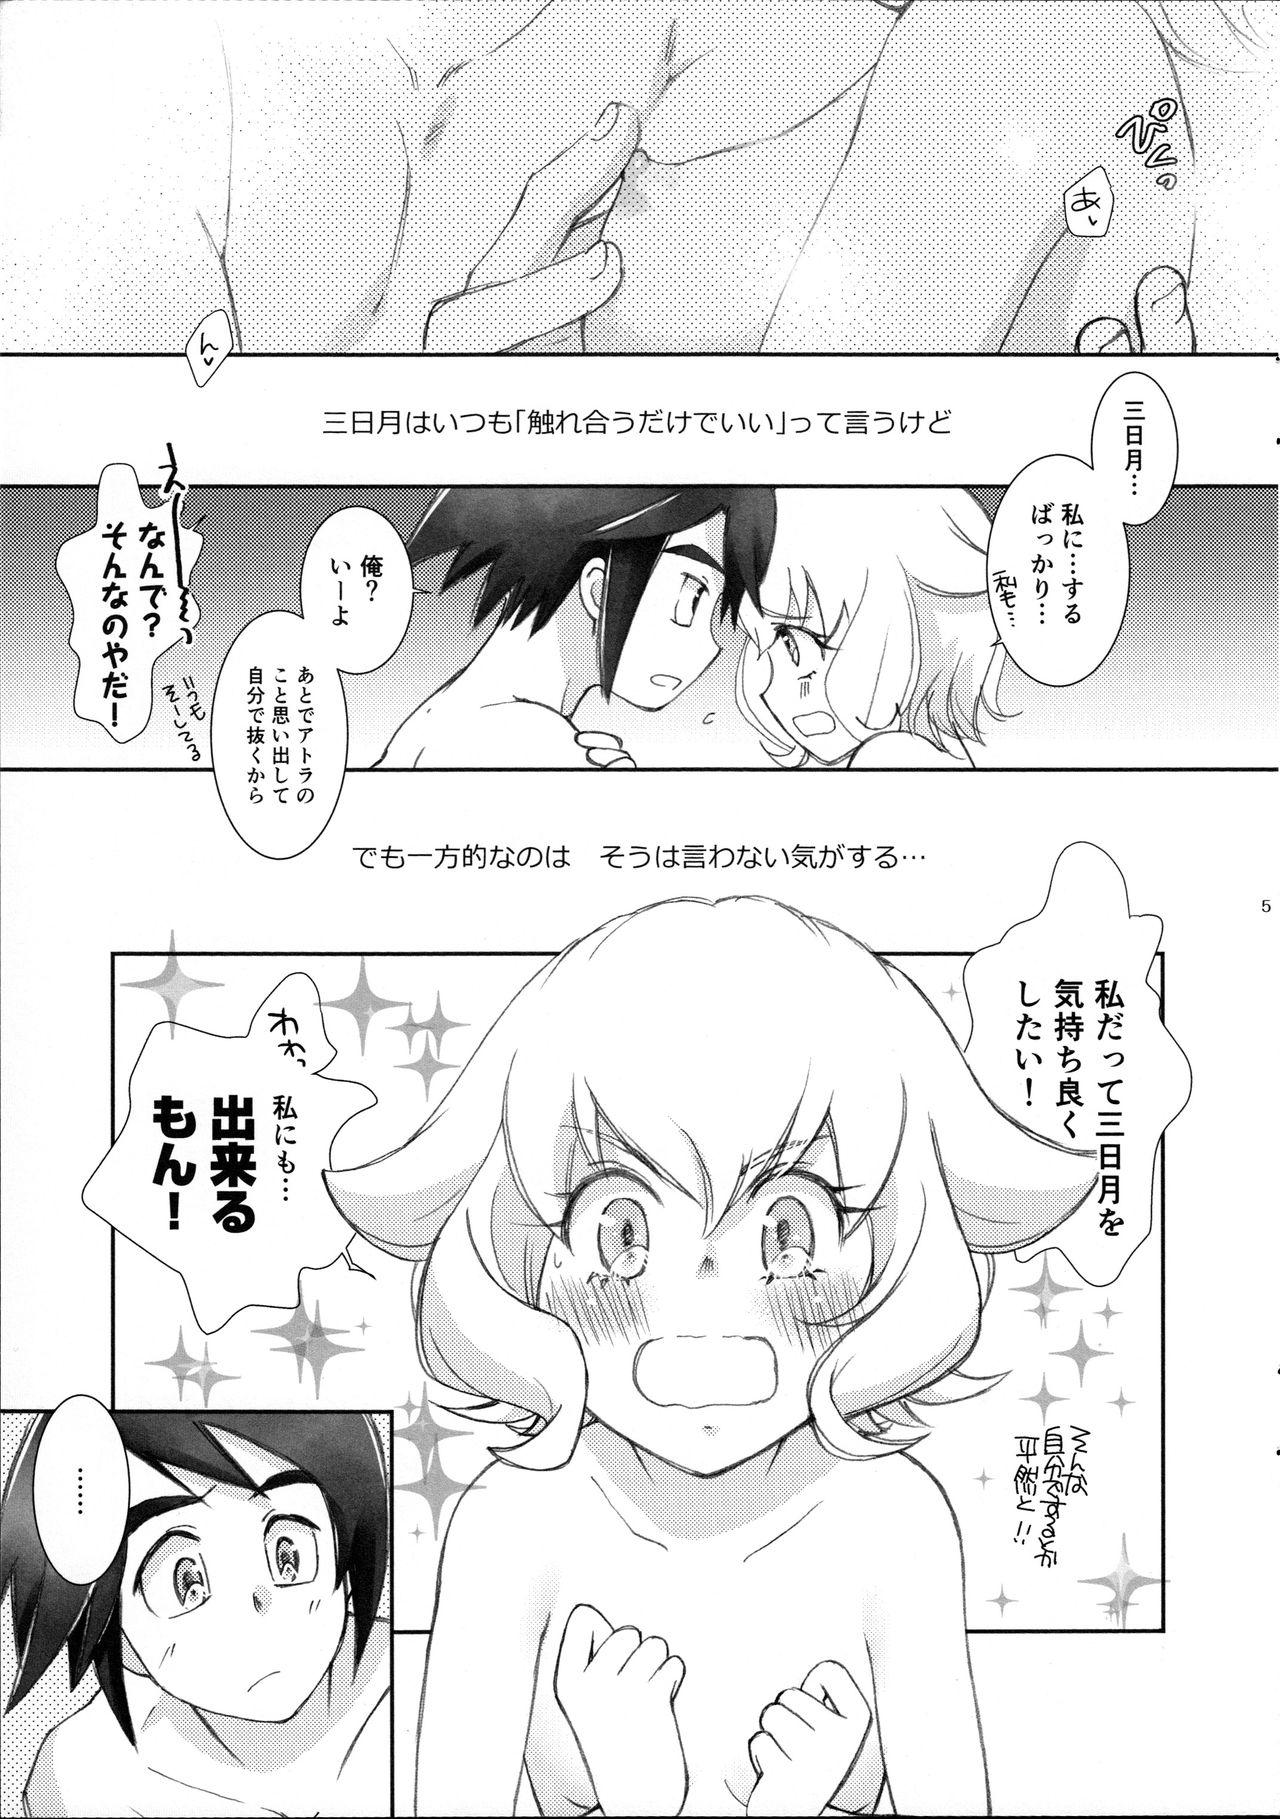 Breeding Mikazuki wa Itsumo Saigomade Shinai - Mobile suit gundam tekketsu no orphans Infiel - Page 4